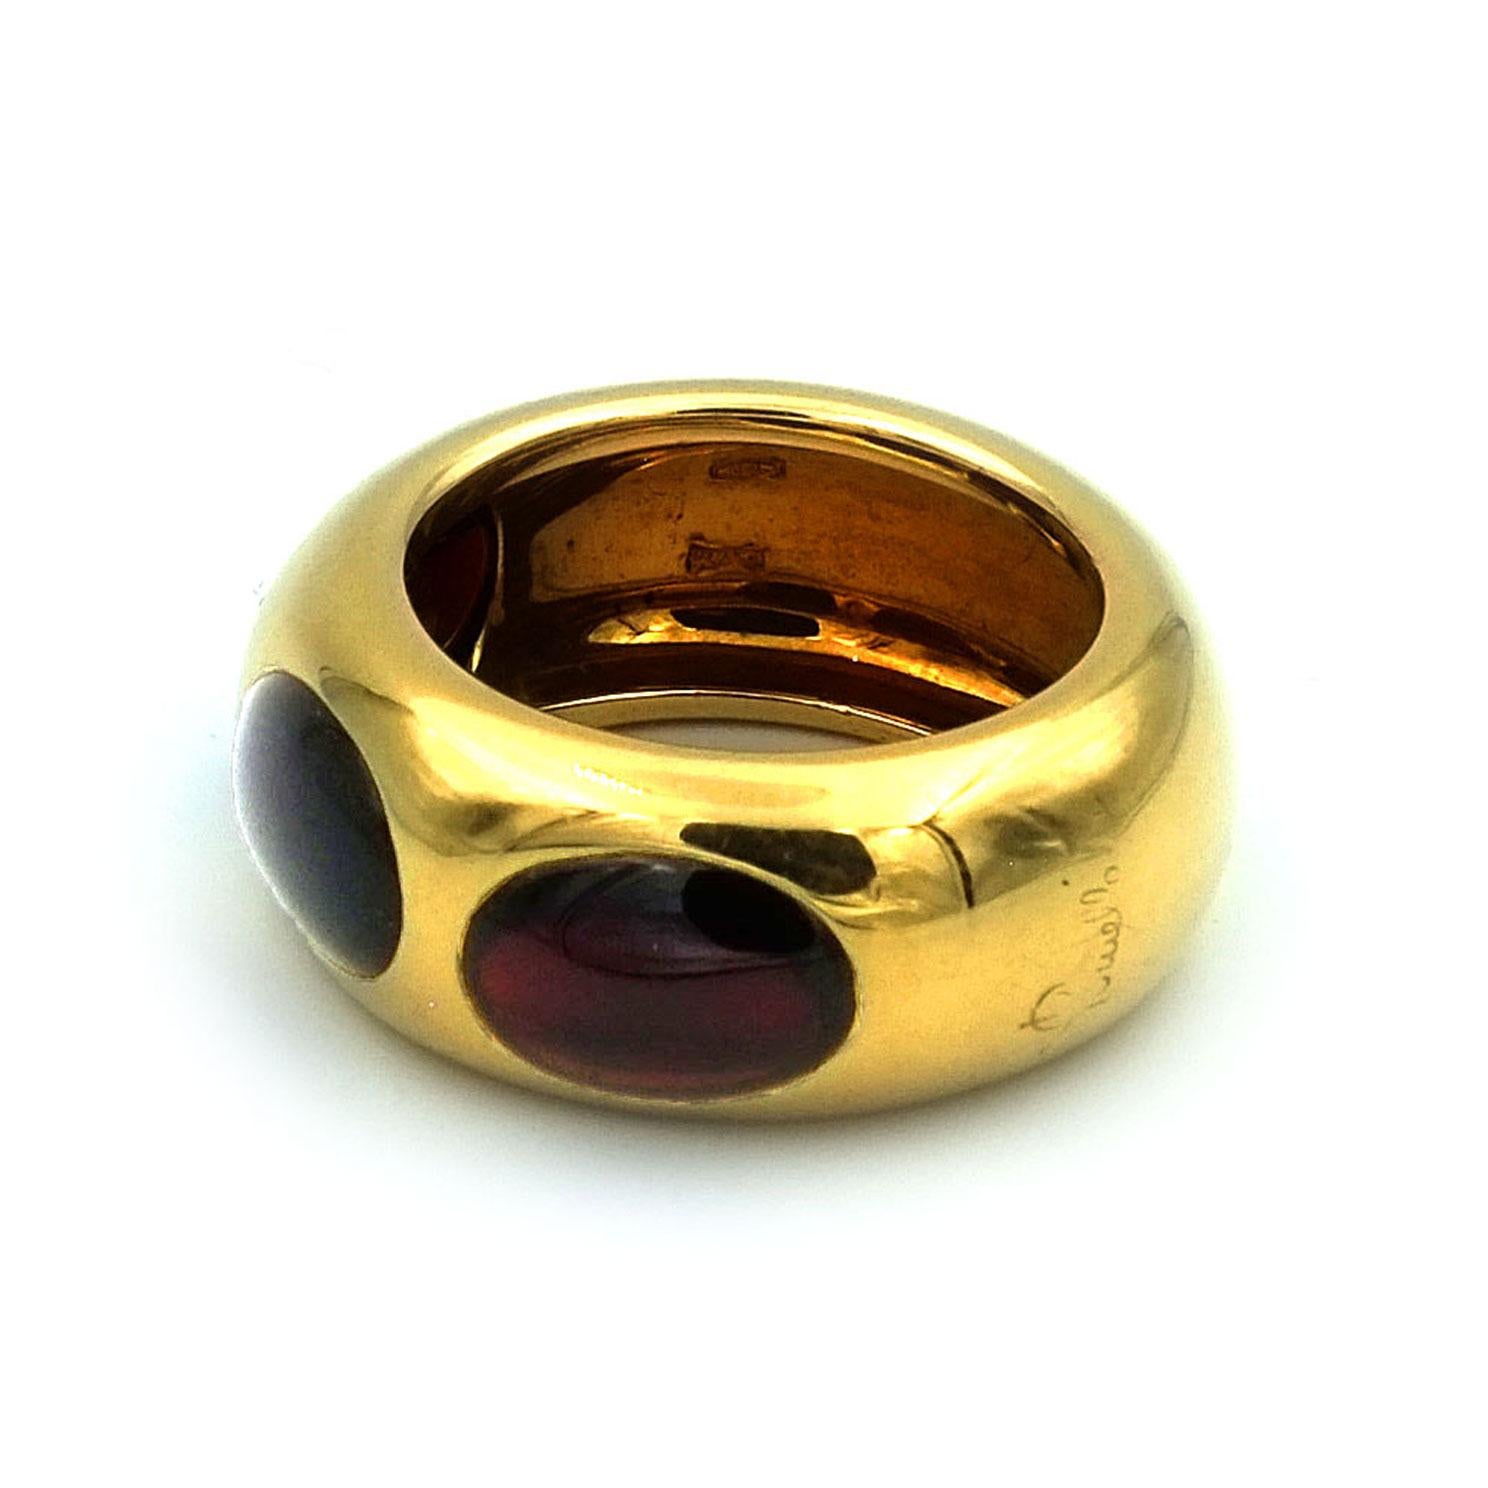 lego golden rings